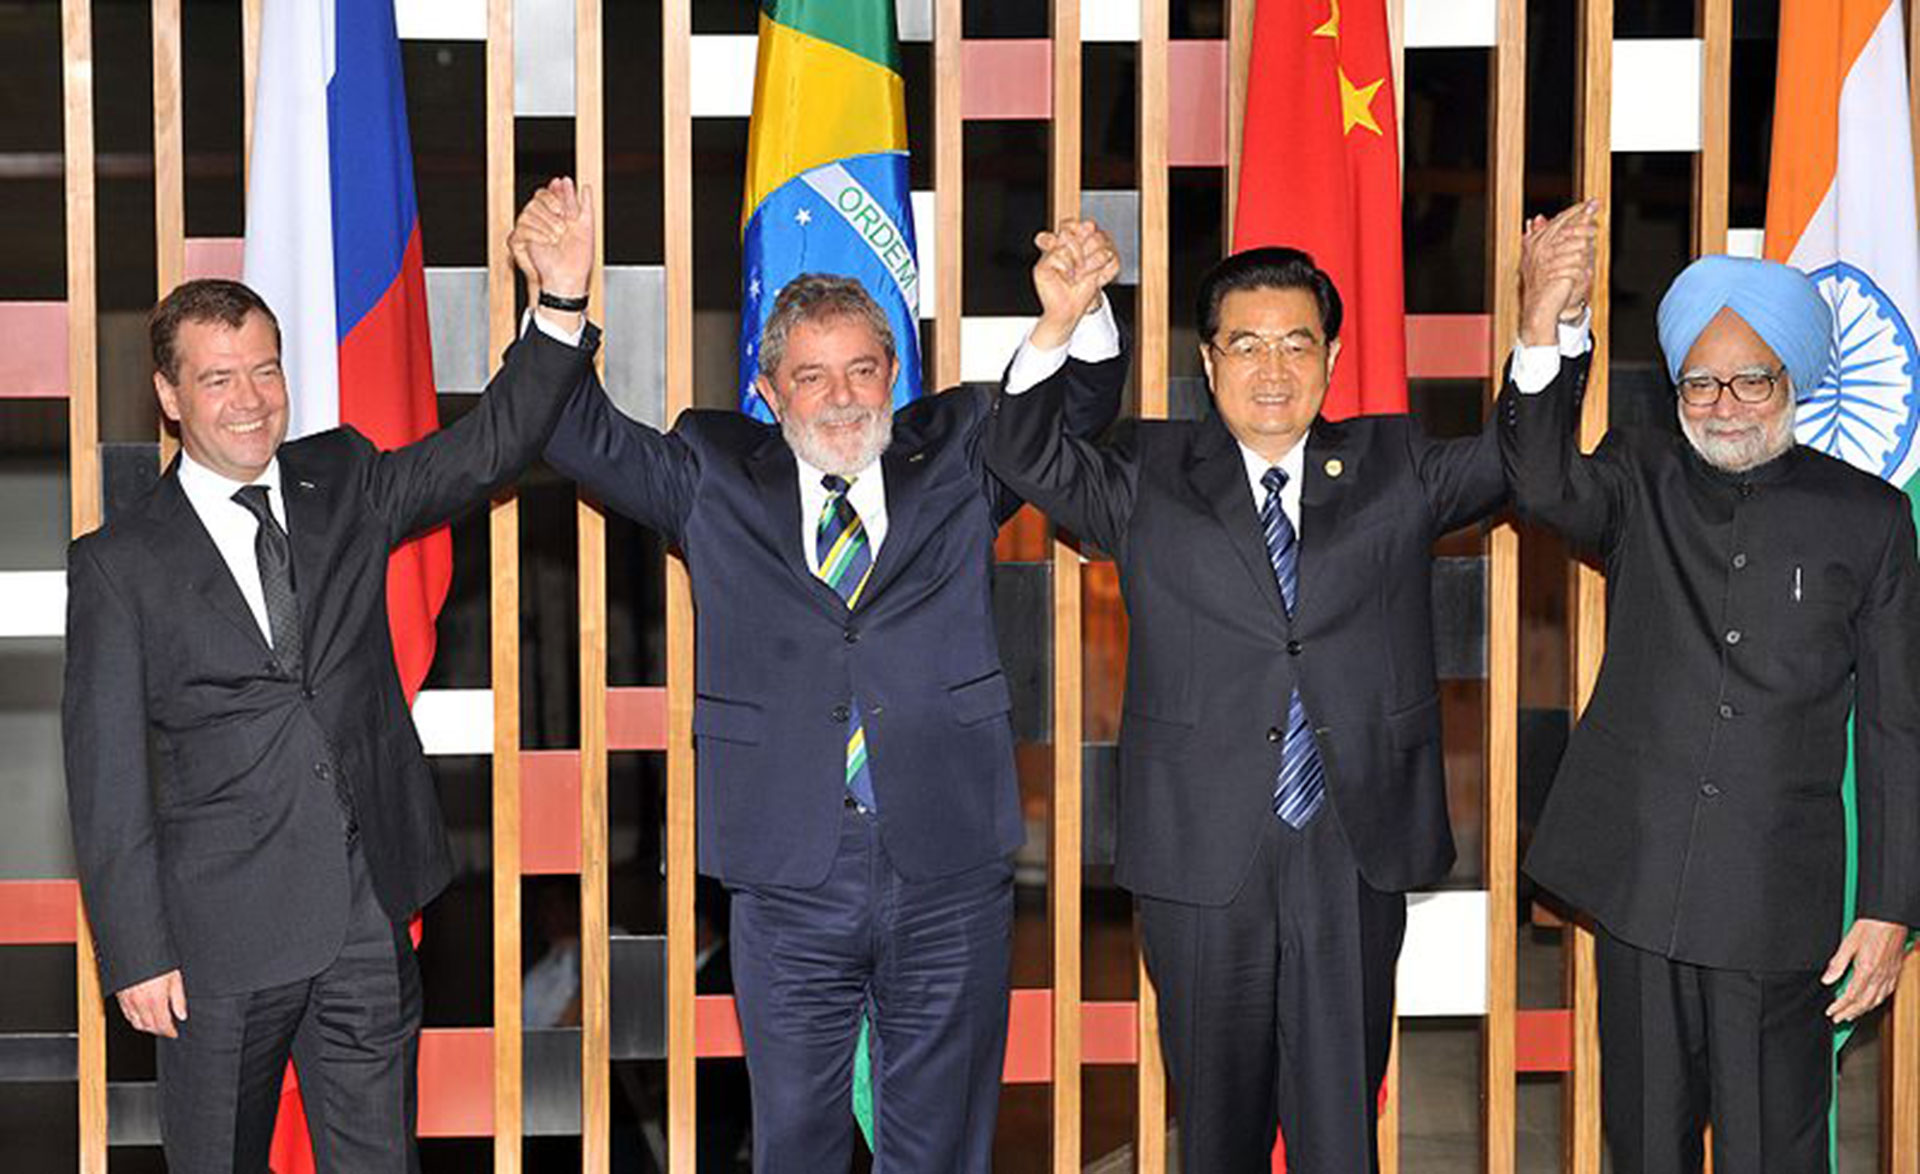 El presidente ruso Dmitri Medvedev, el presidente Lula da Silva, el presidente chino Hu Jintao y el primer ministro indio Manmohan Singh posan para la foto oficial durante la II Cumbre de Jefes de Estado y de Gobierno del BRIC, en 2010 (José Cruz/ABr)